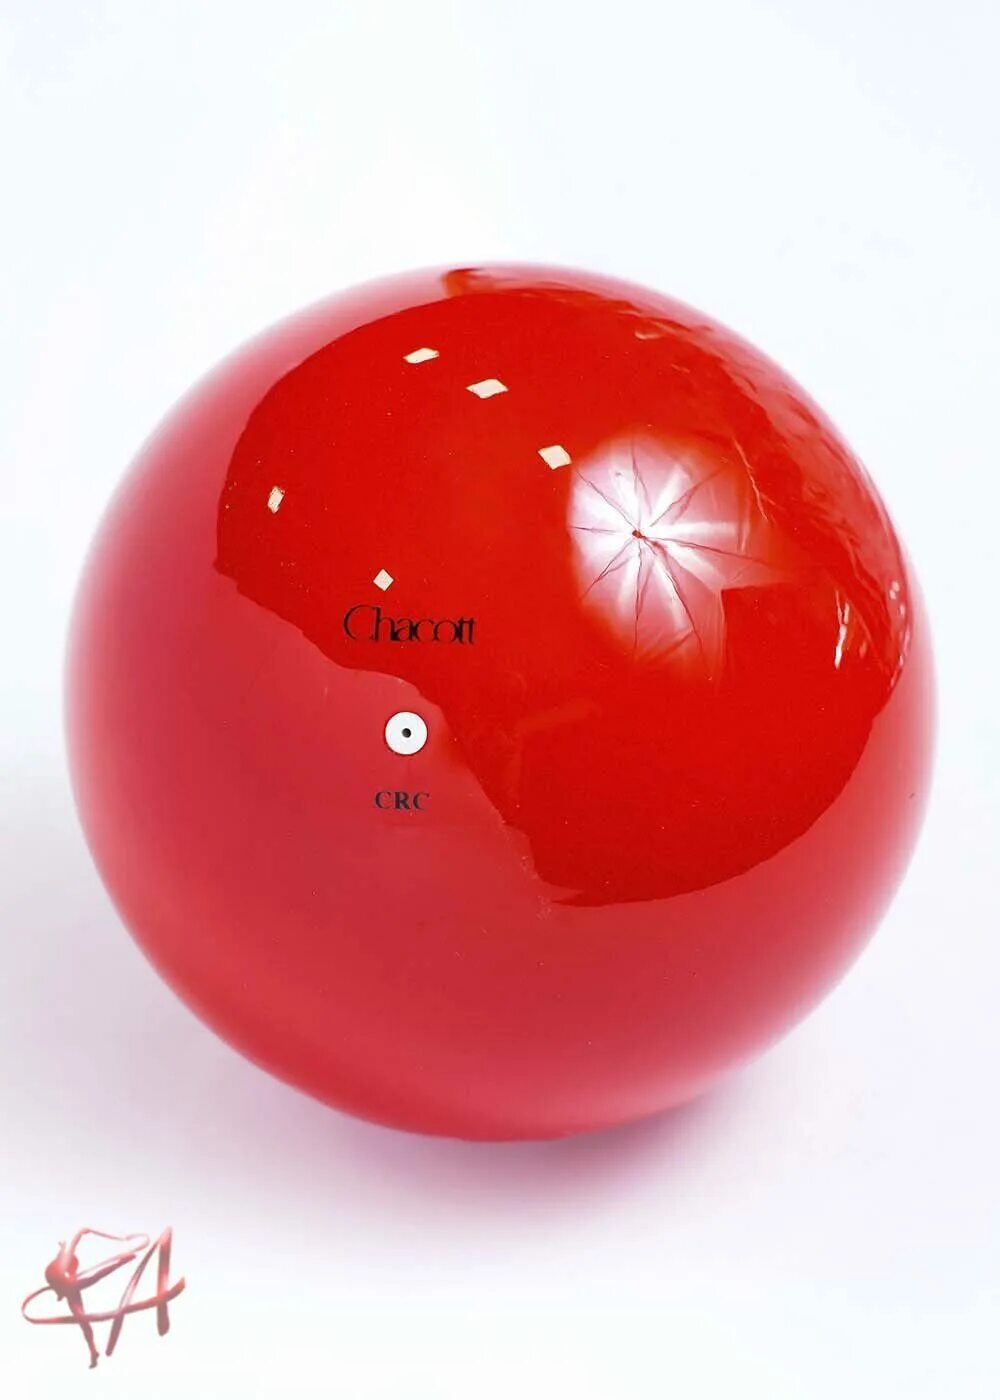 Buy balls. Мяч Сасаки 17 см. Мяч chacott 18.5. Мяч гимнастический Сасаки 17. Красный мяч для художественной гимнастики Сасаки.